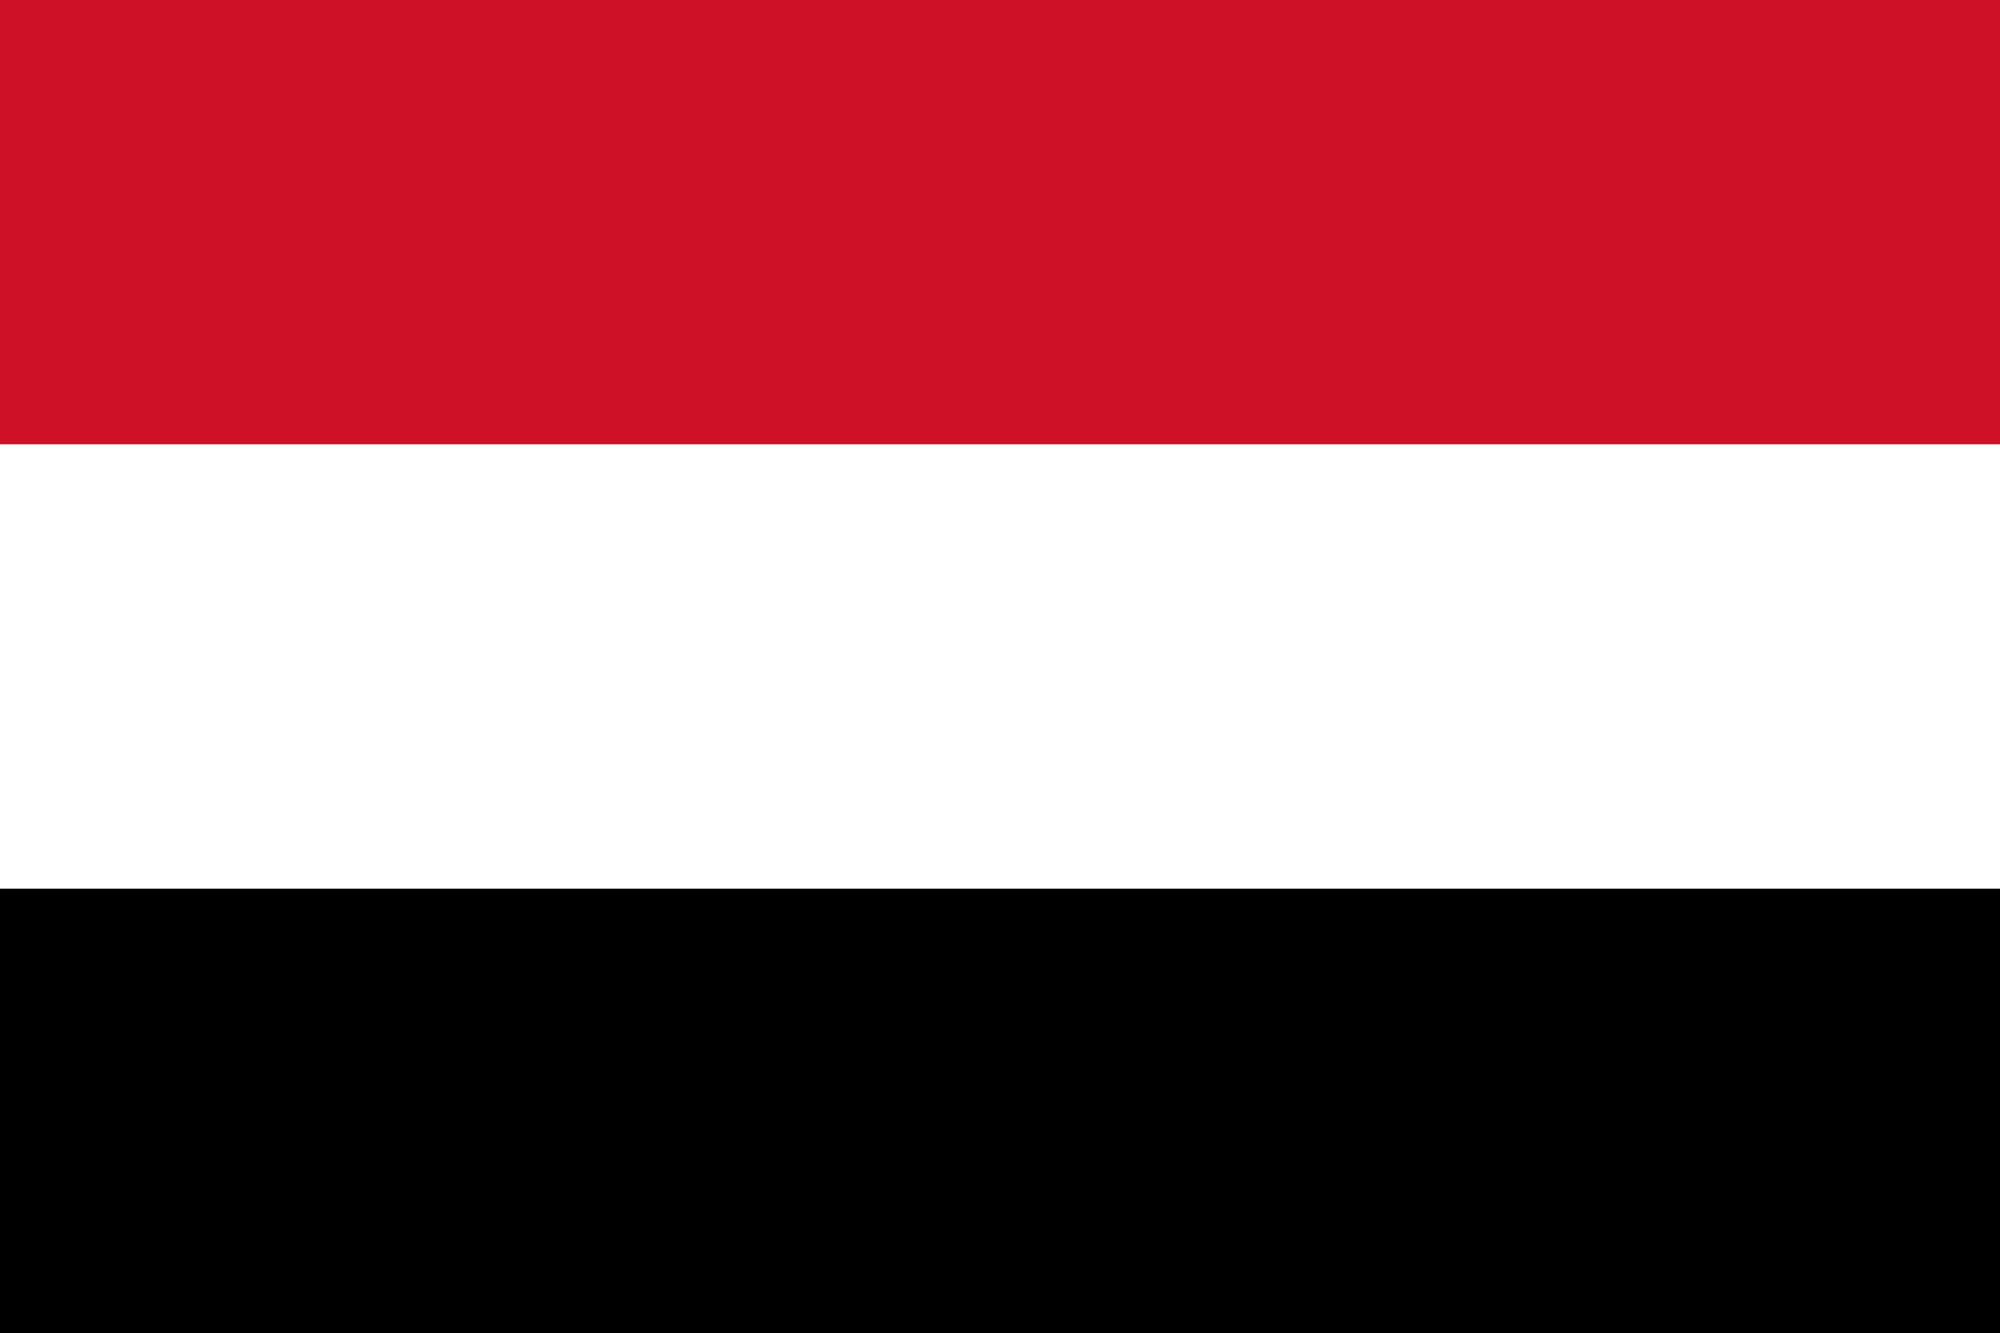 الحكومة اليمنية تأمل ان يؤدي الاتفاق السعودي الإيراني الى تغيير في سياسات طهران التخريبية في اليمن والمنطقه 